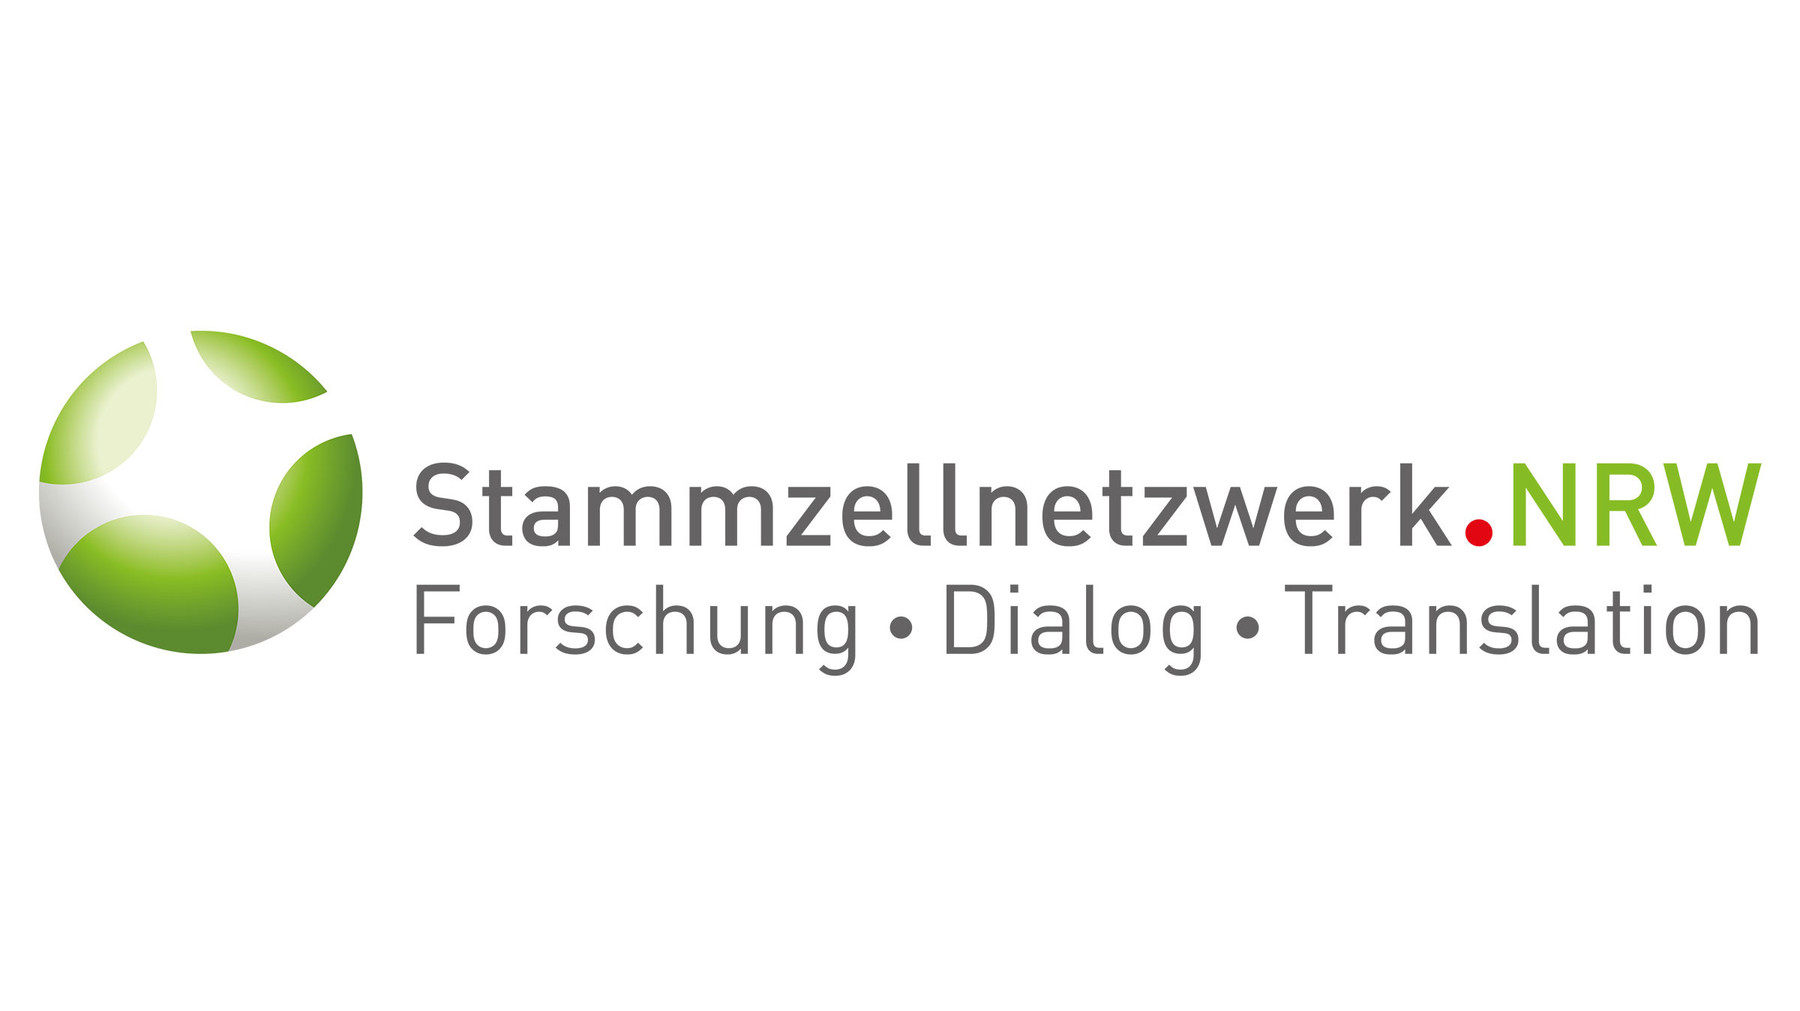 Federmann und Kampcyzk Design Stammzellnetzwerk NRW Responsive Website